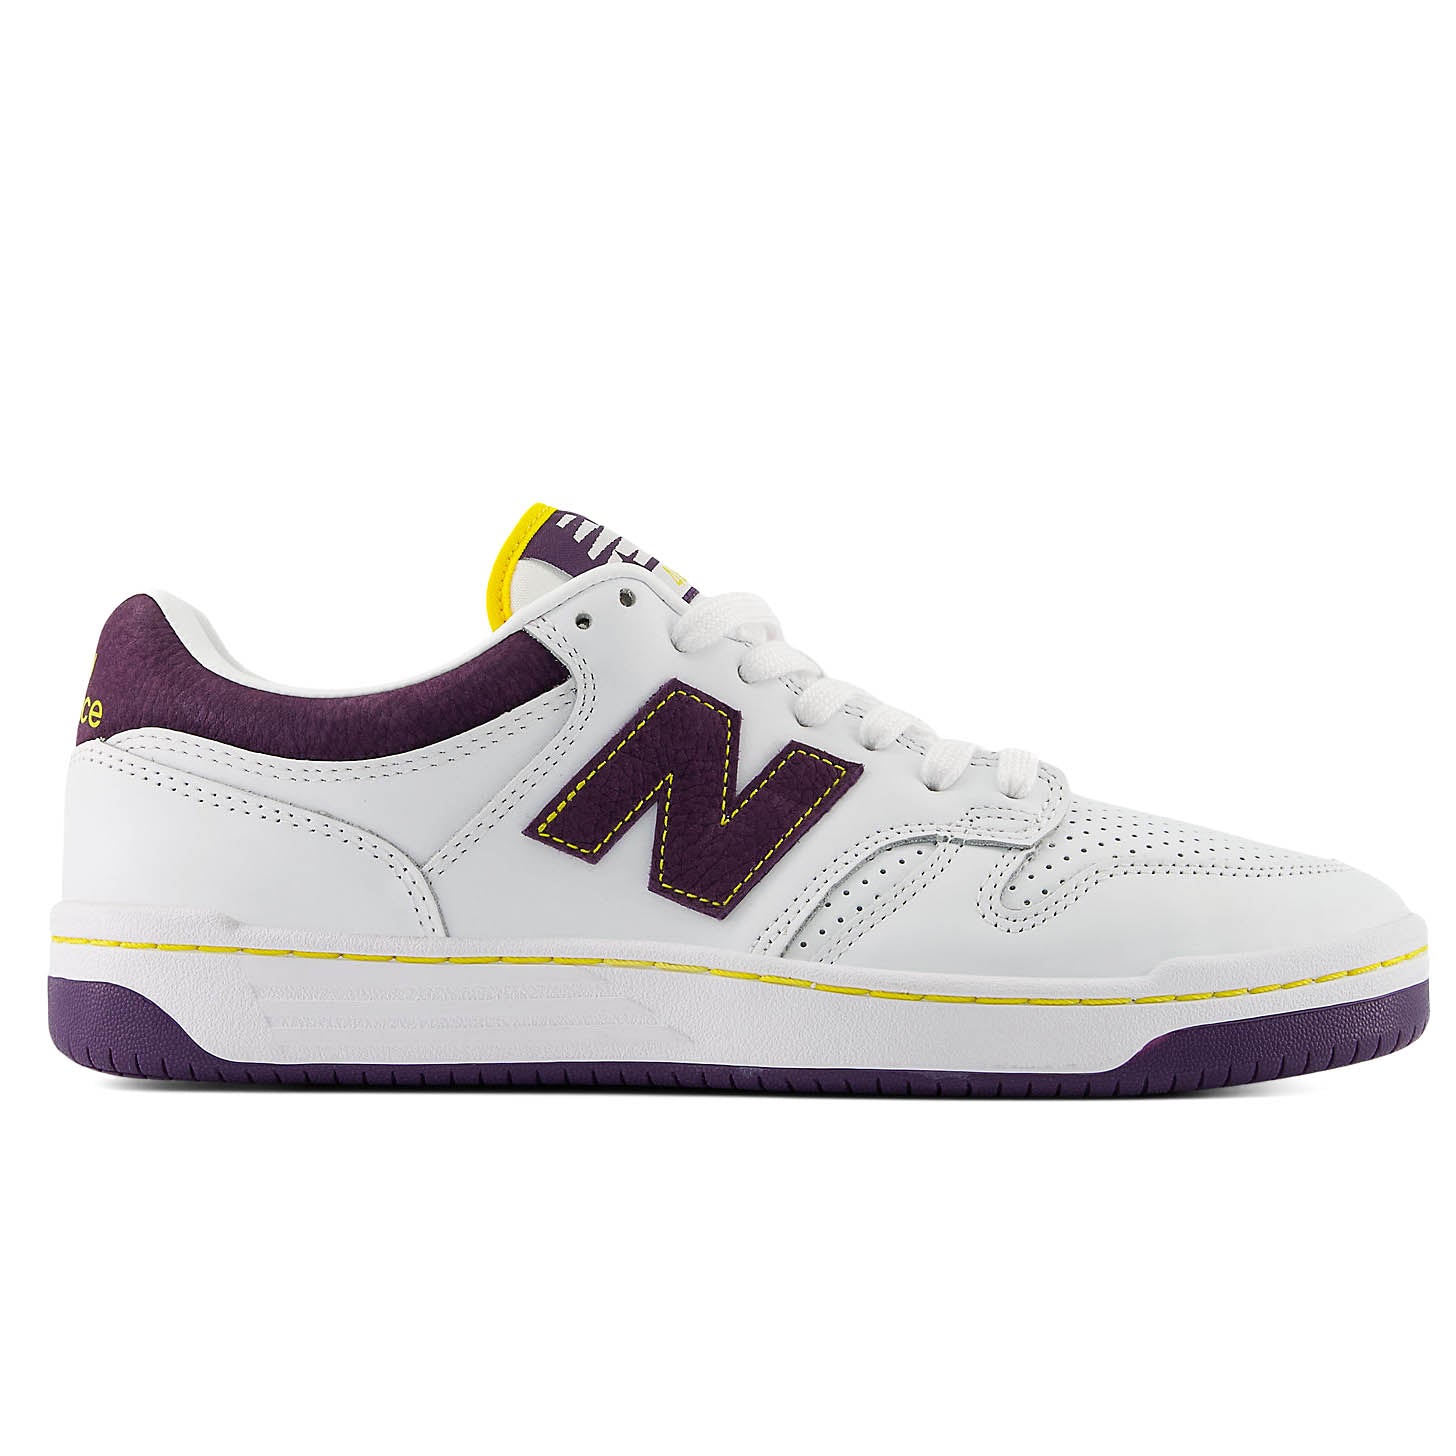 NB Numeric 480 - White/Purple